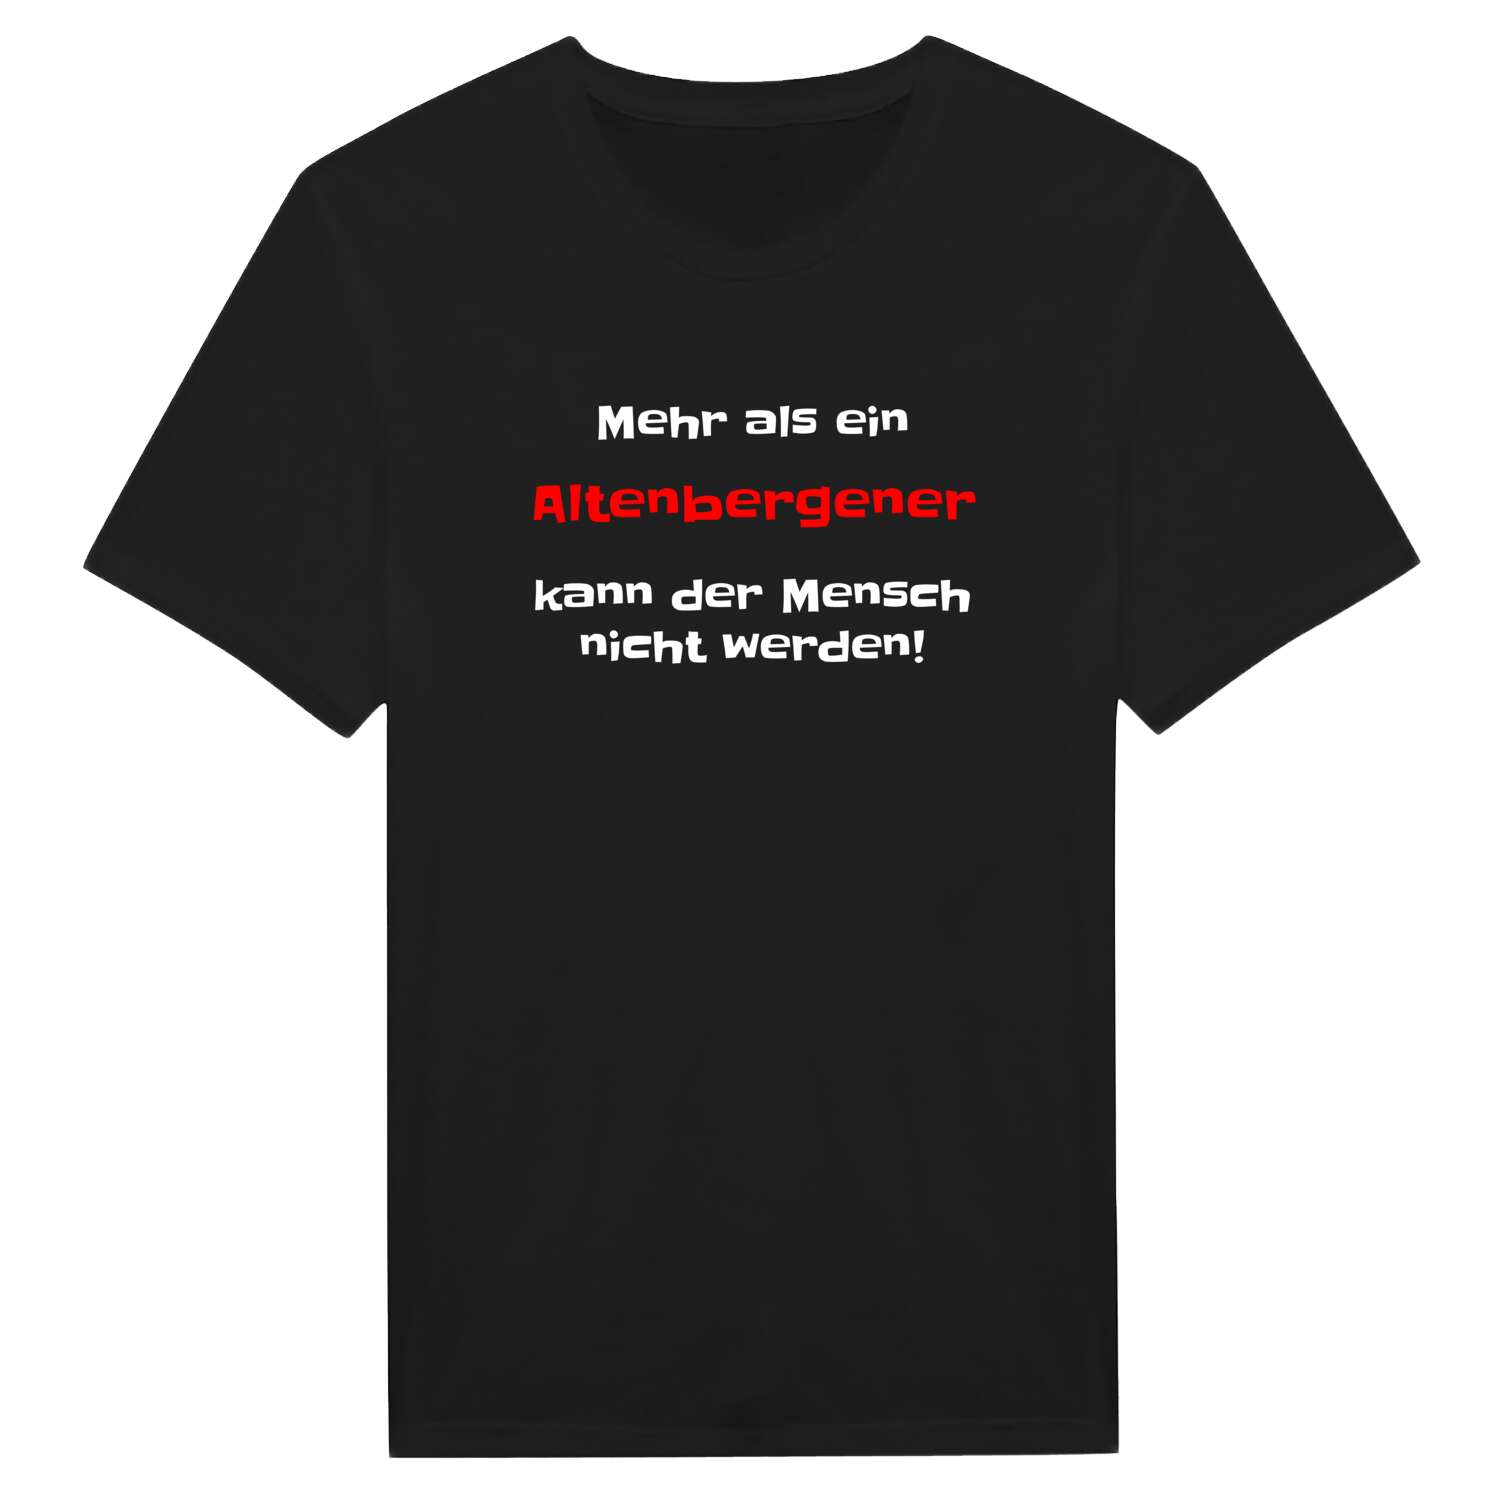 Altenberge T-Shirt »Mehr als ein«